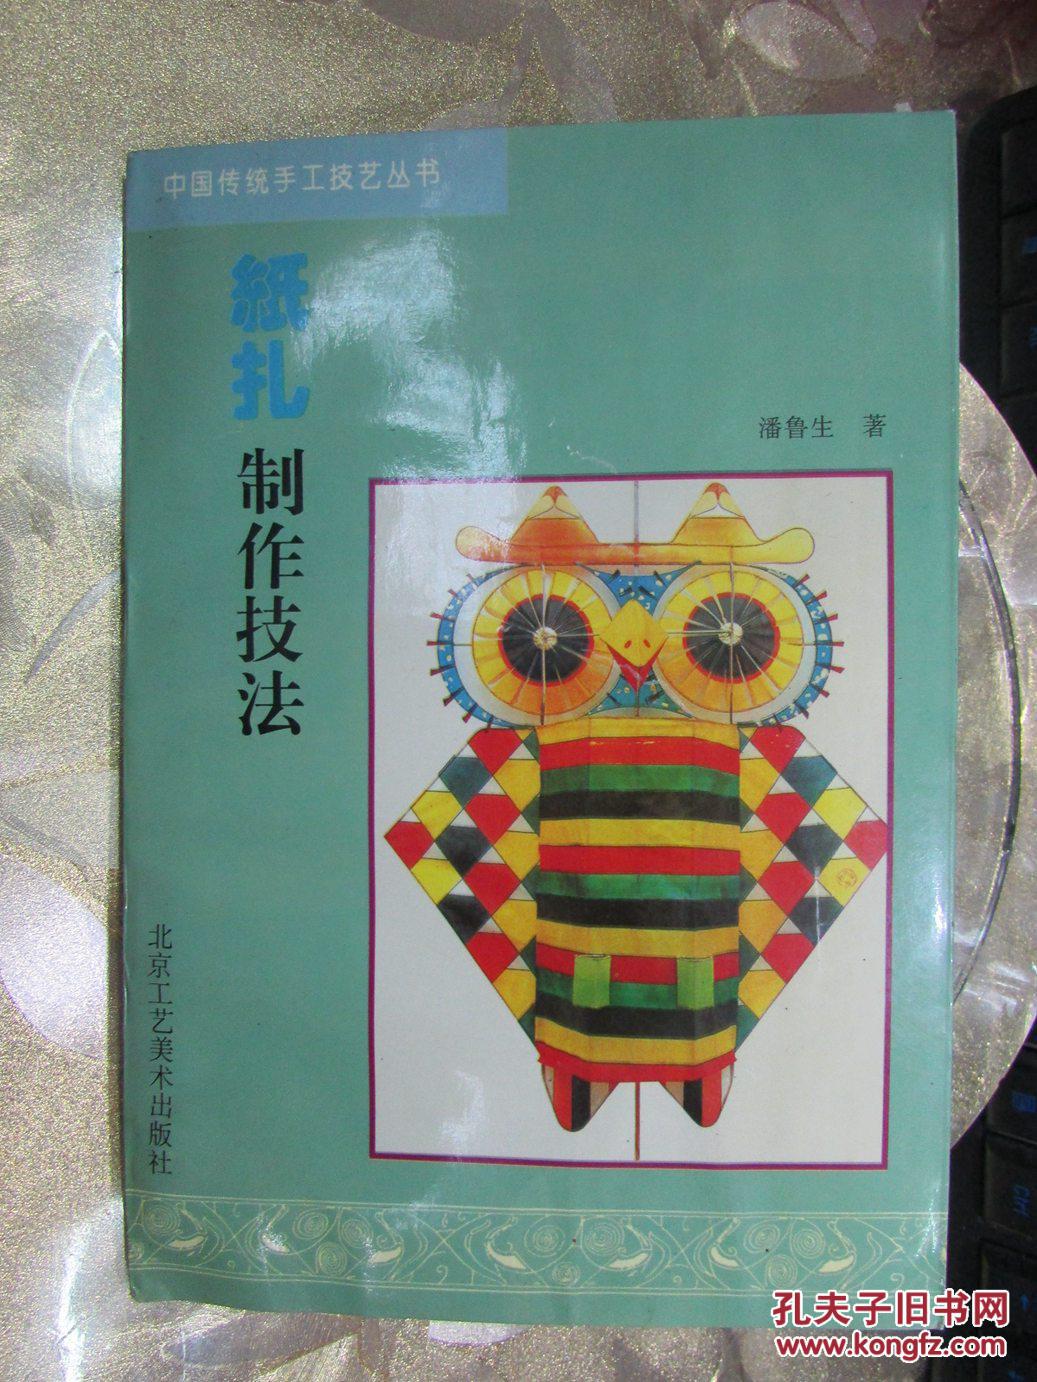 中国传统手工技艺丛书:纸扎制作技法图片